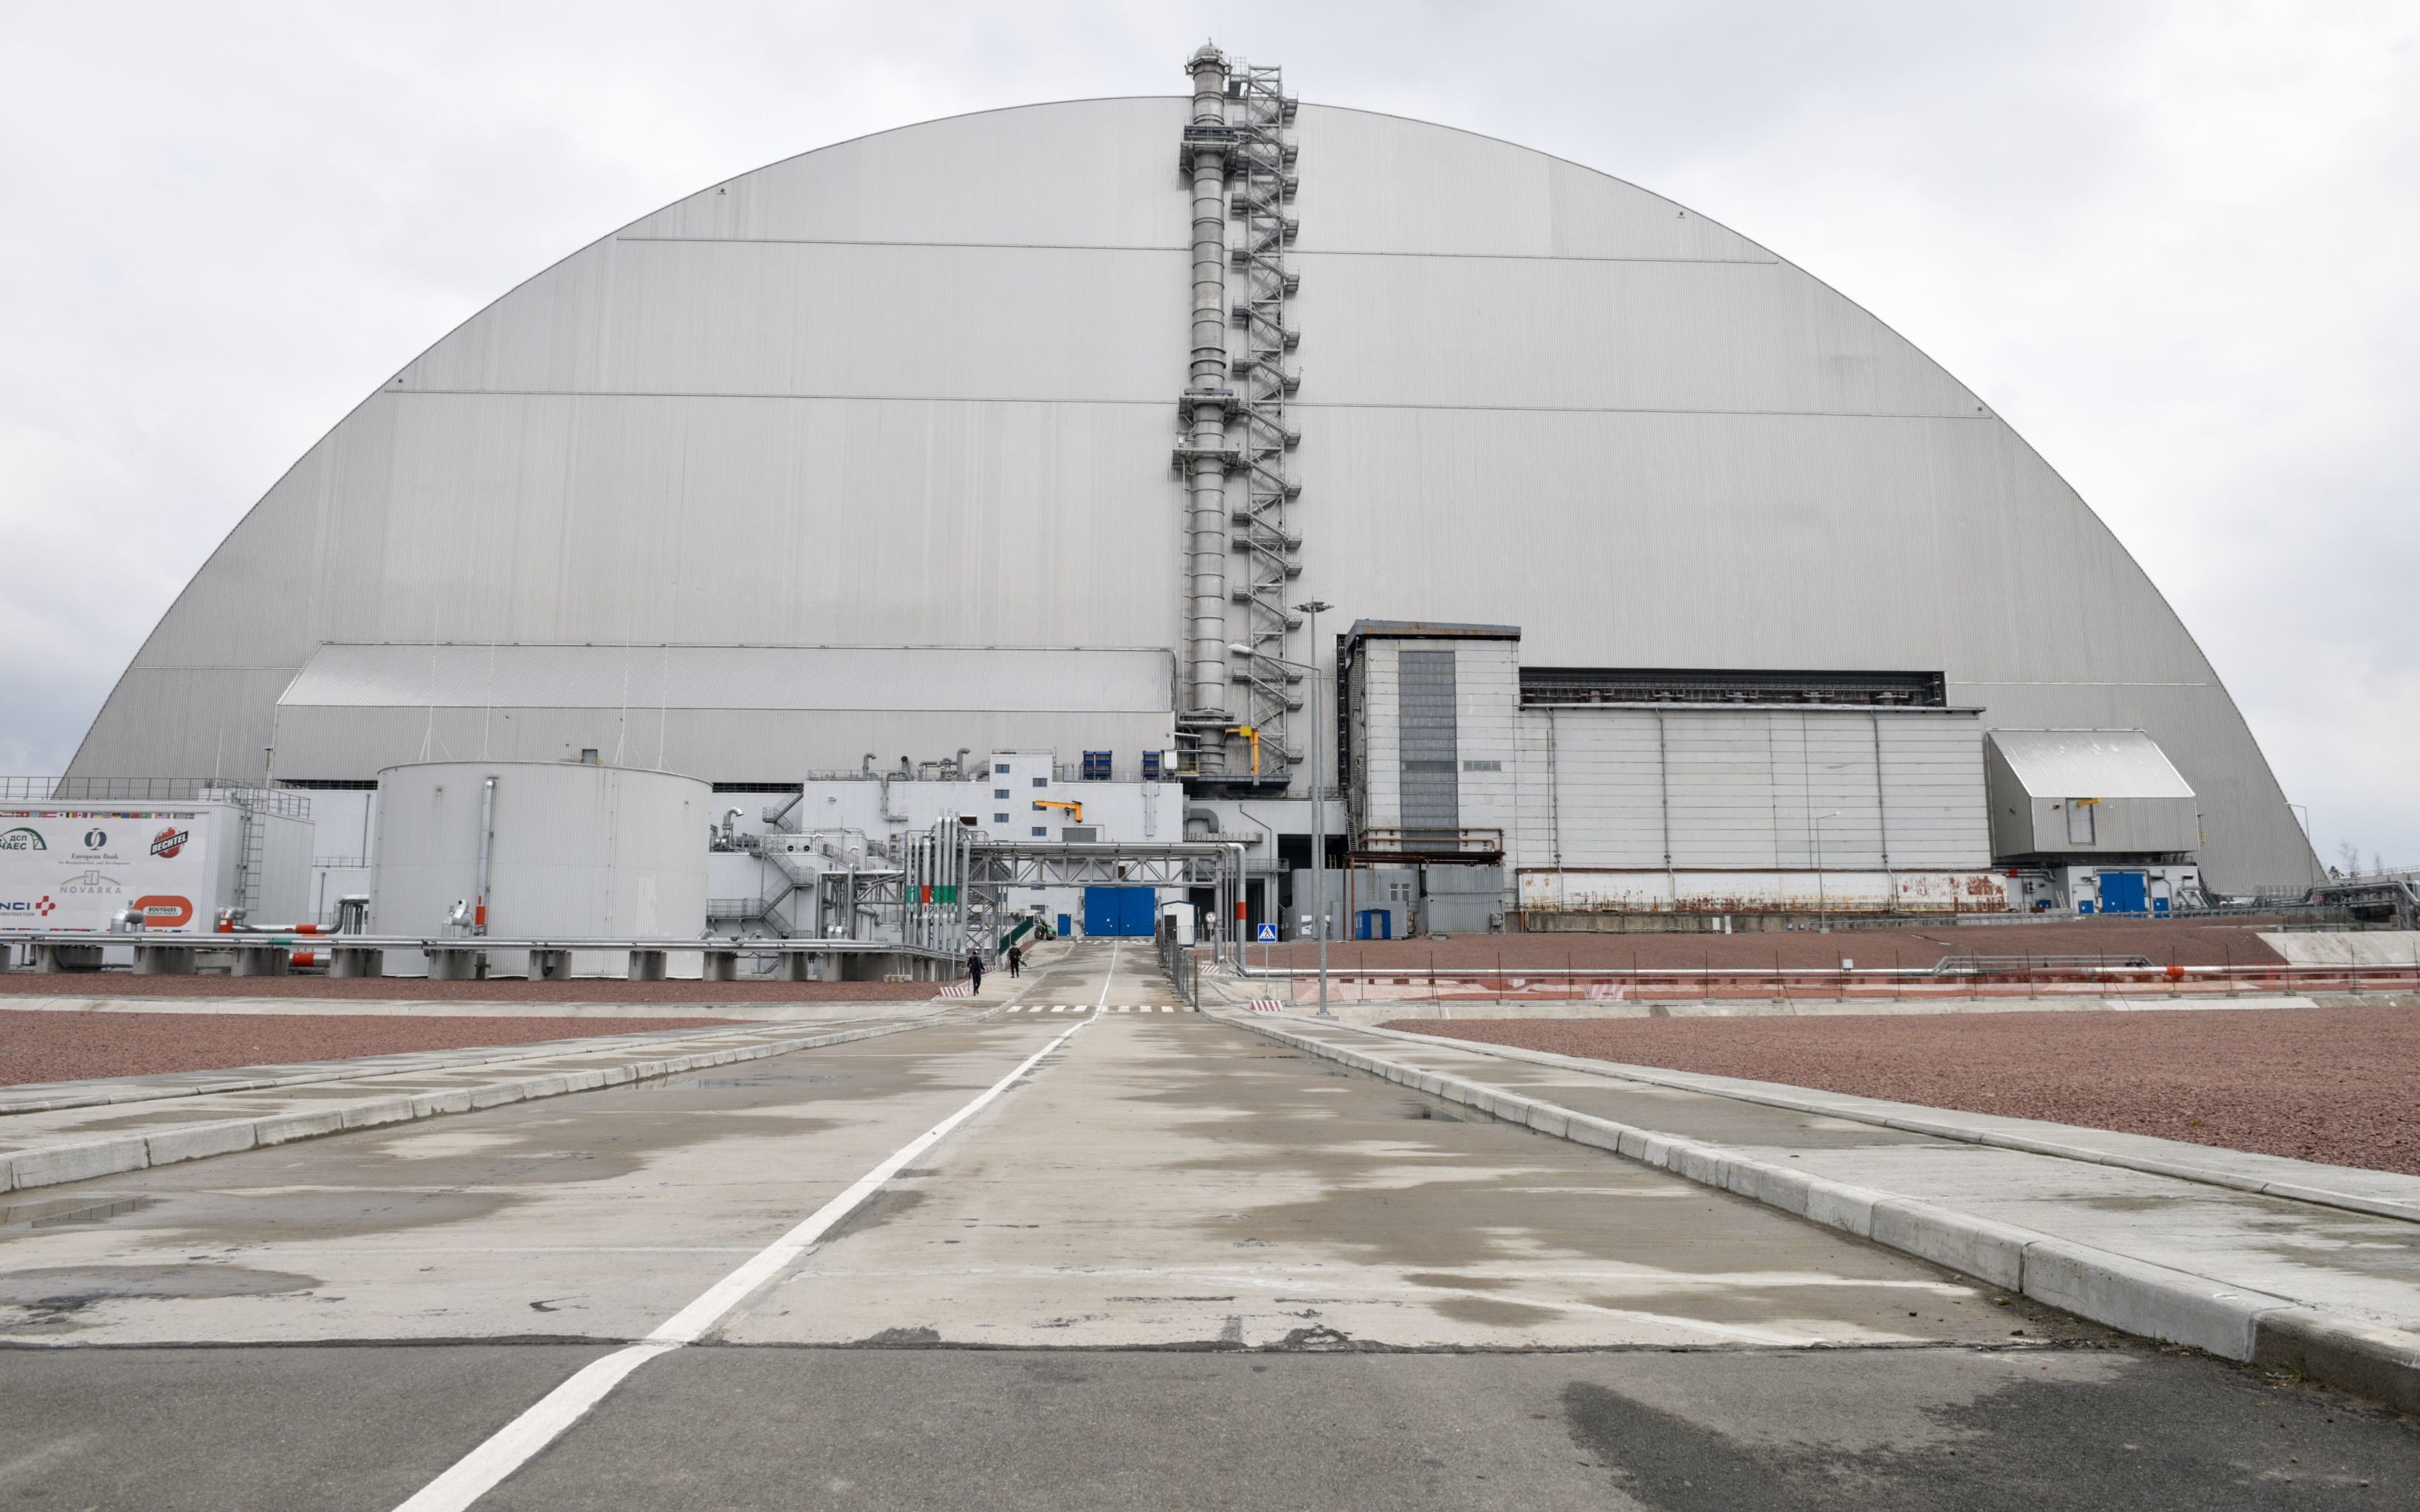 Изоляционное арочное сооружение (Новый безопасный конфайнмент) над разрушенным в результате аварии 4-м энергоблоком Чернобыльской АЭС